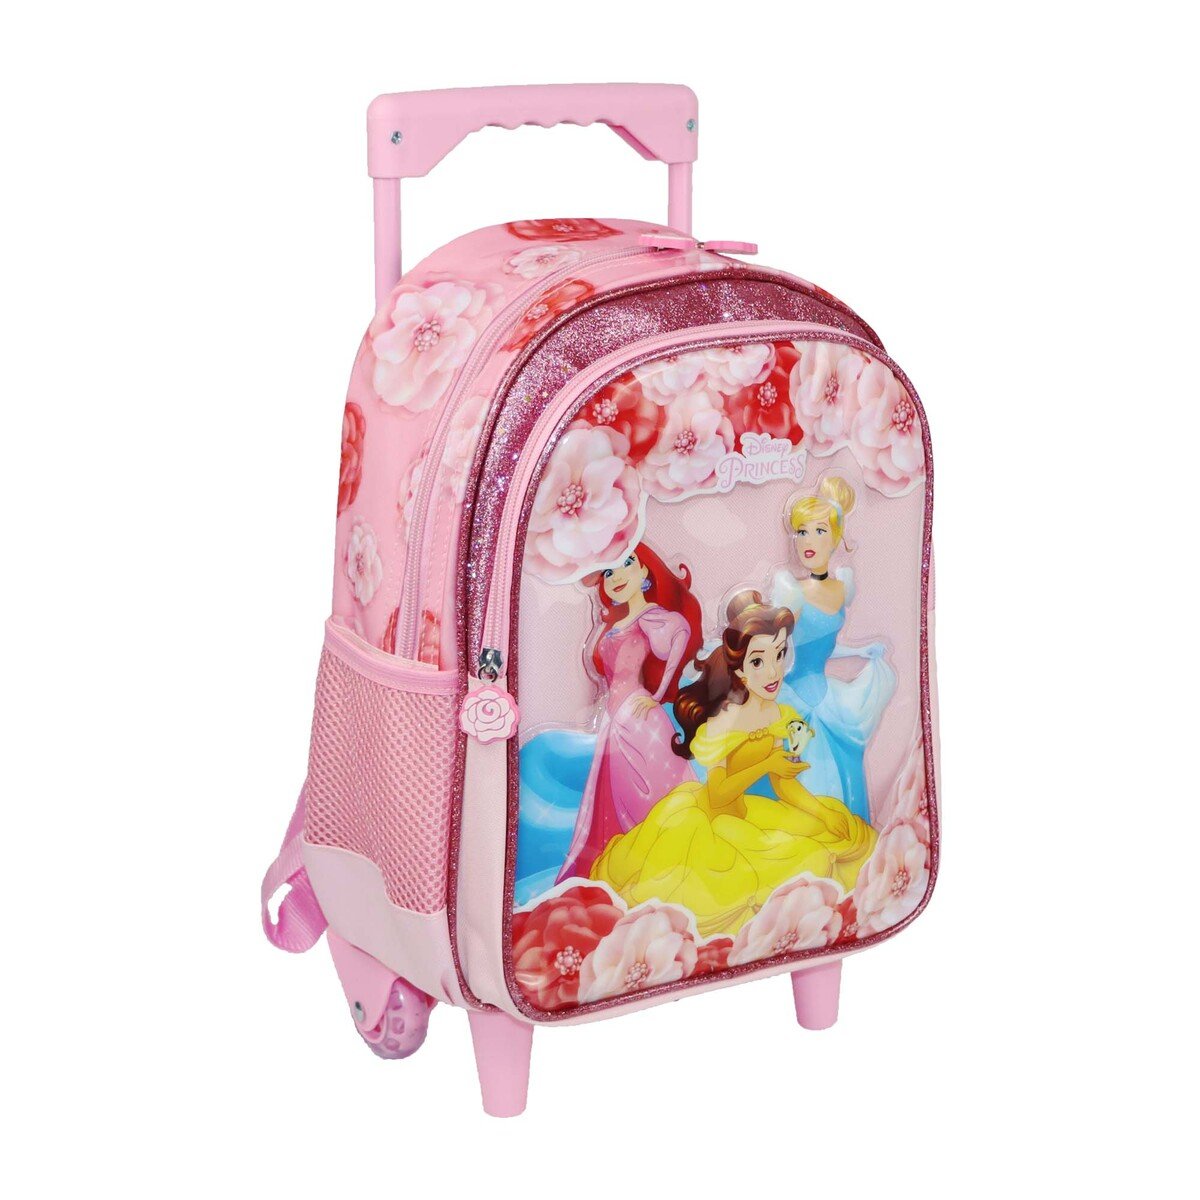 Princess School Trolley Bag 6899200232 13inch